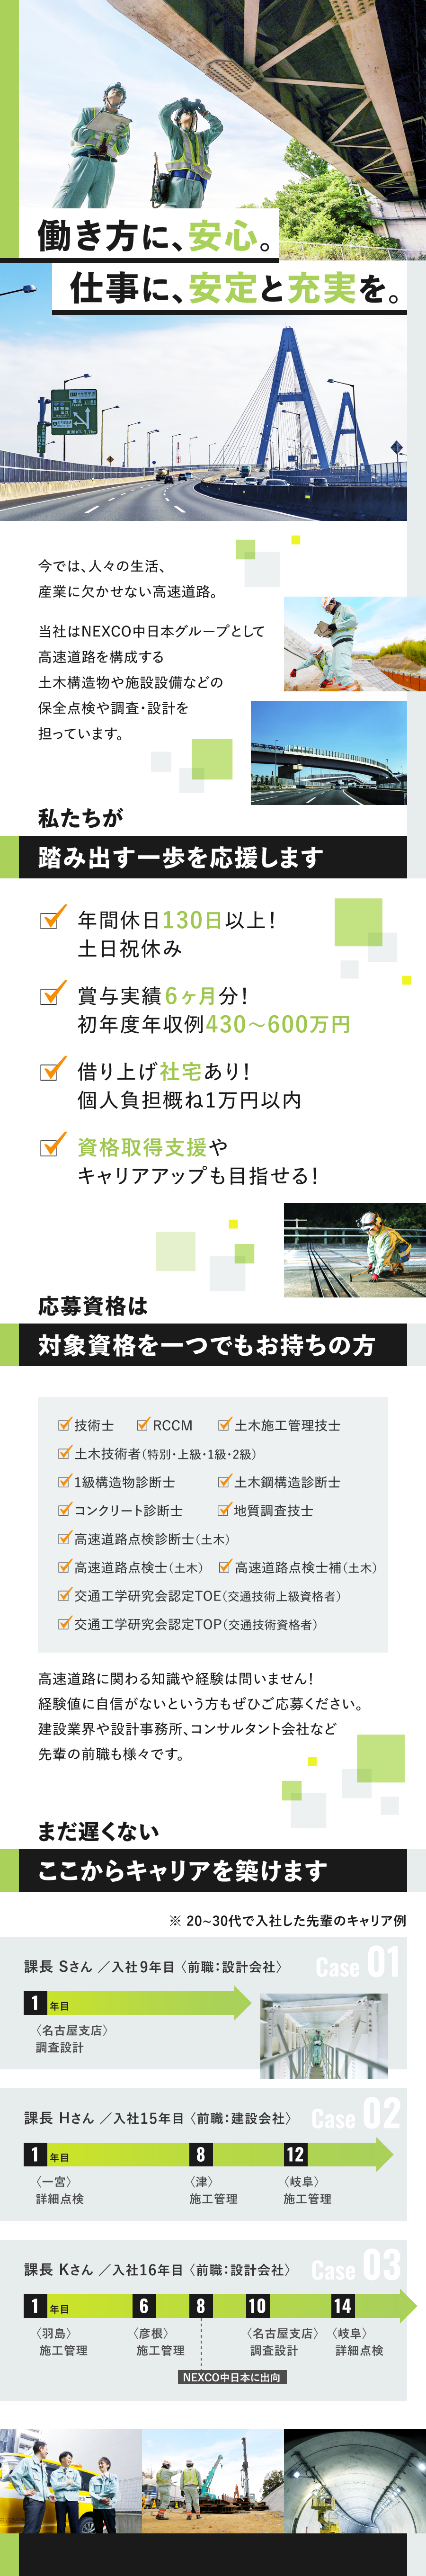 中日本ハイウェイ・エンジニアリング名古屋株式会社からのメッセージ